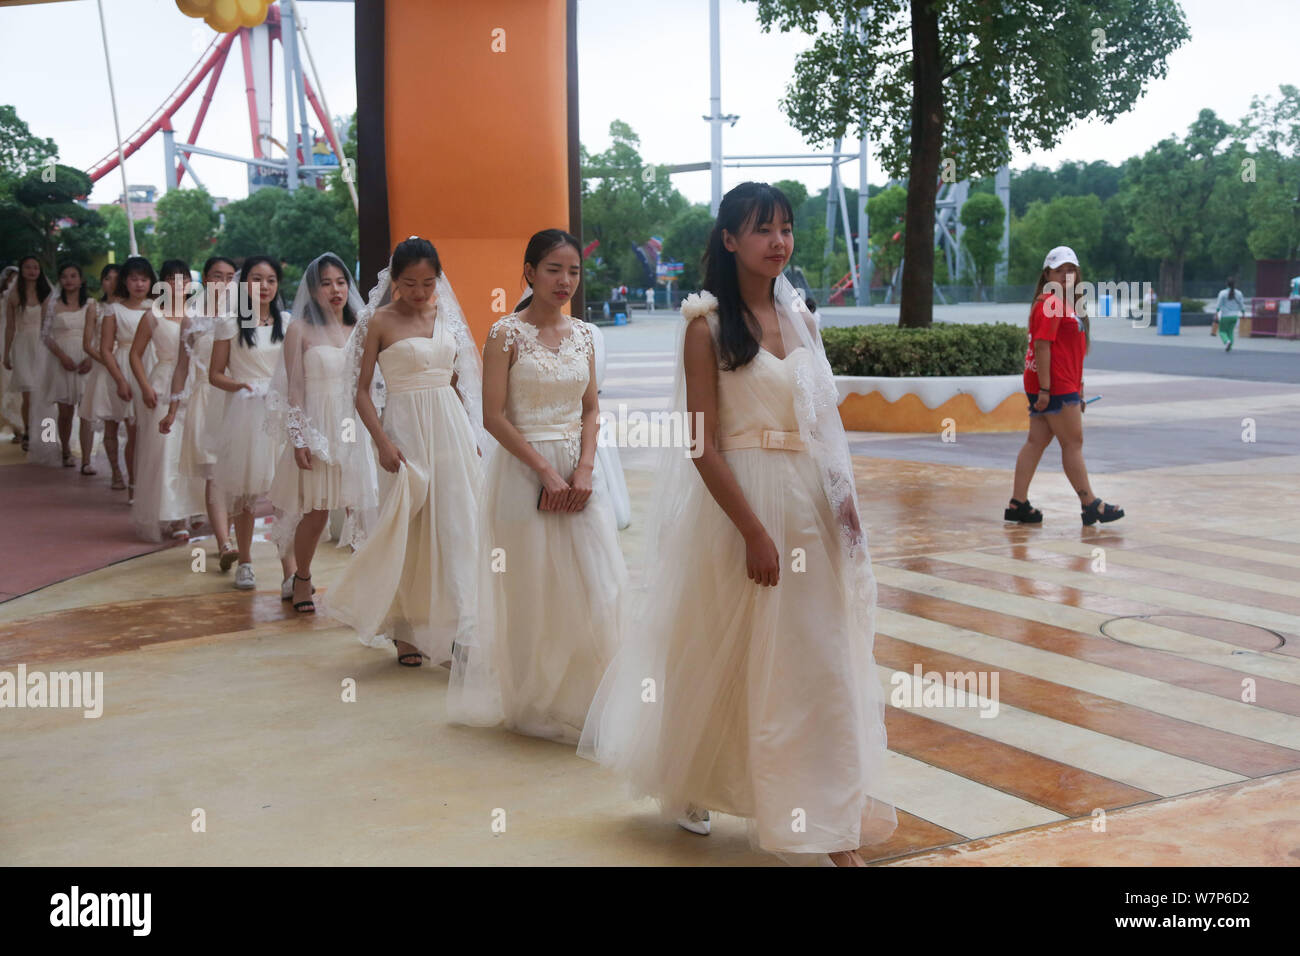 Bräute Brautkleider sind eine Gruppe Trauung für Paare der schulfreund Liebhaber aus einer Universität Wuhan Happy Valley Amusement Park gesehen Stockfoto